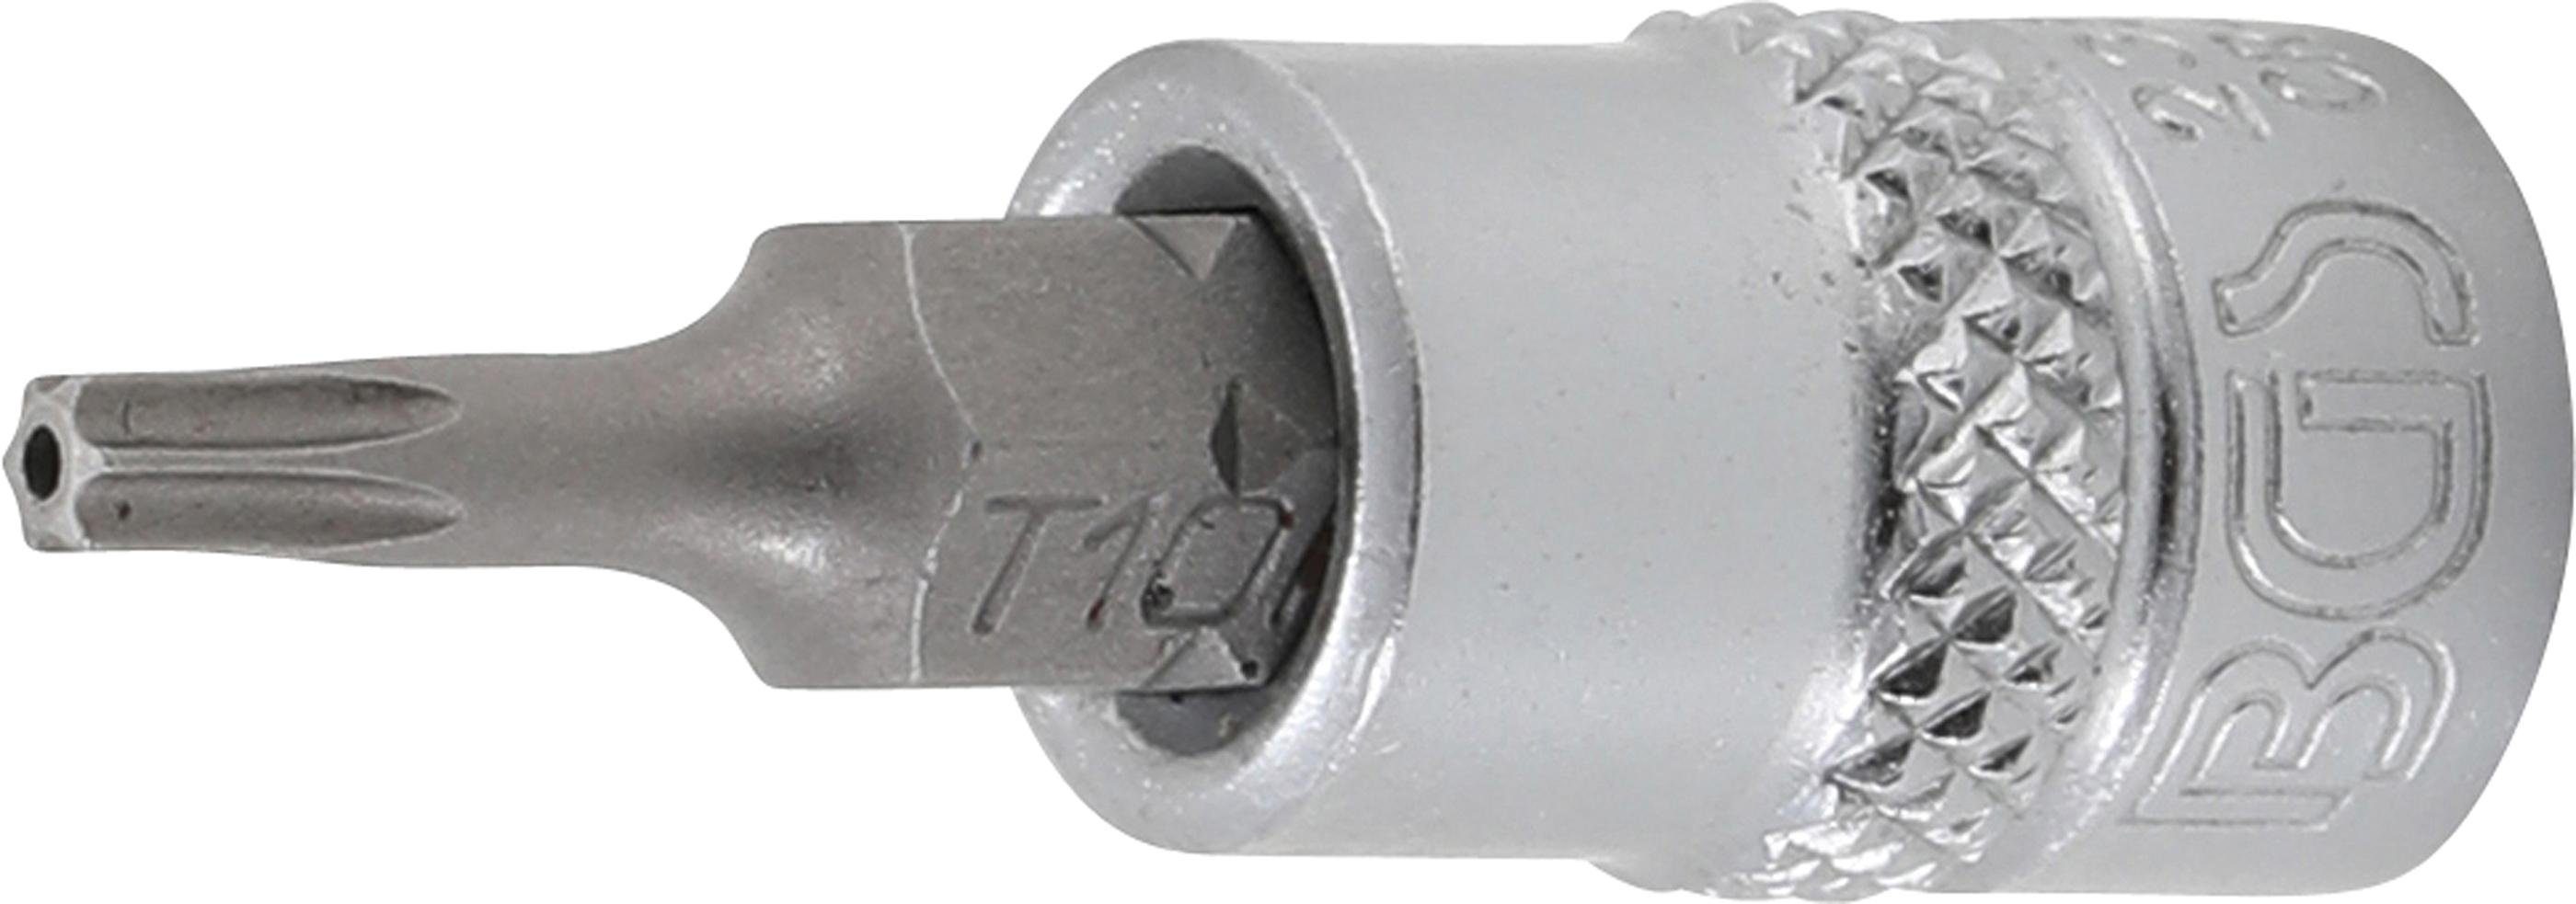 BGS technic Bit-Schraubendreher Bit-Einsatz, Antrieb Innenvierkant 6,3 mm (1/4), T-Profil (für Torx) mit Bohrung T10